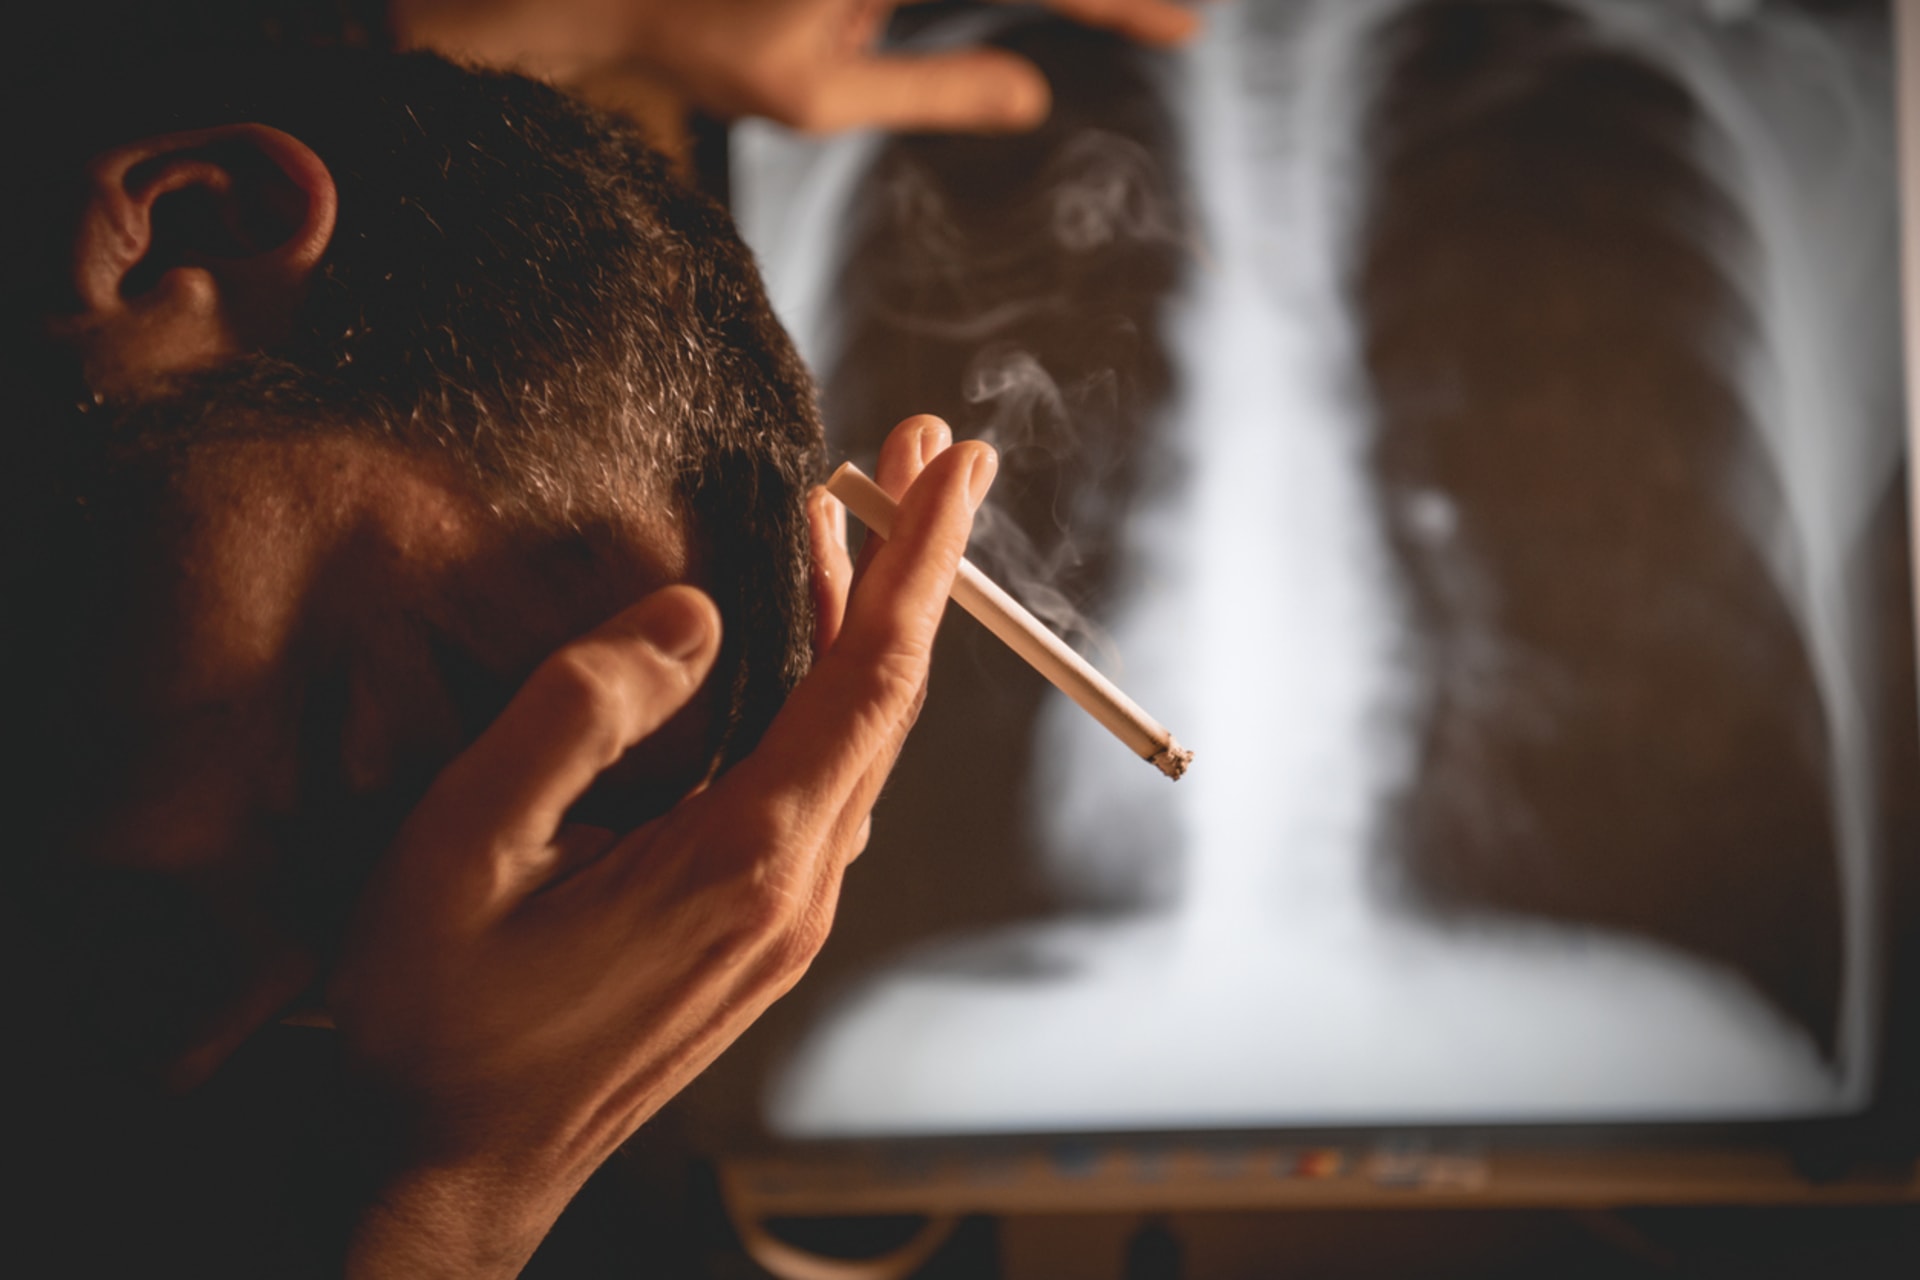 Rakovina plic je diagnóza, která děsí většinu kuřáků